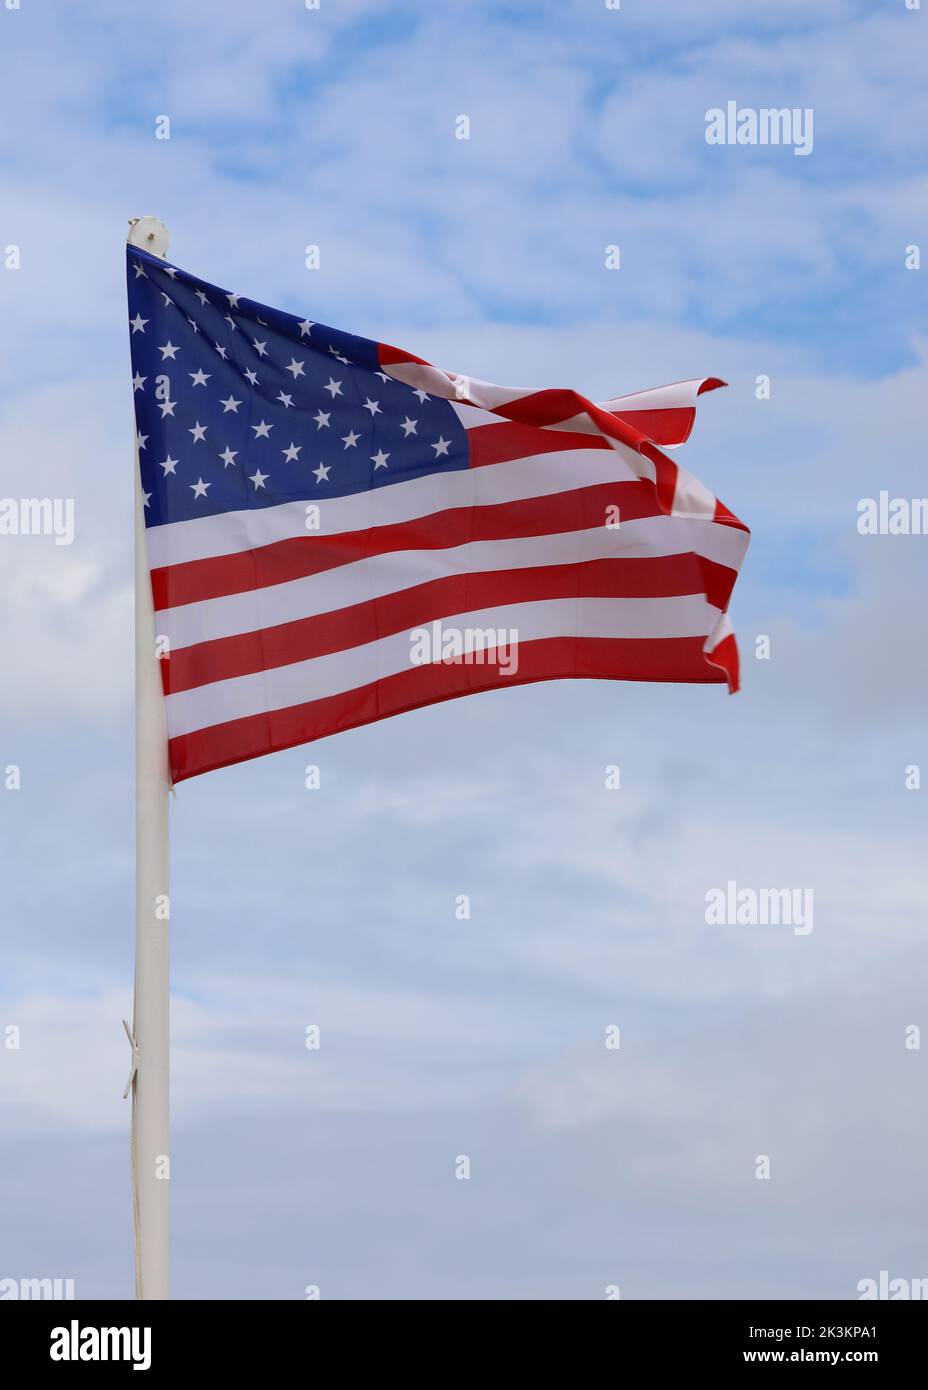 La Gran Bandera Americana ondulaba en el cielo azul sin gente Foto de stock